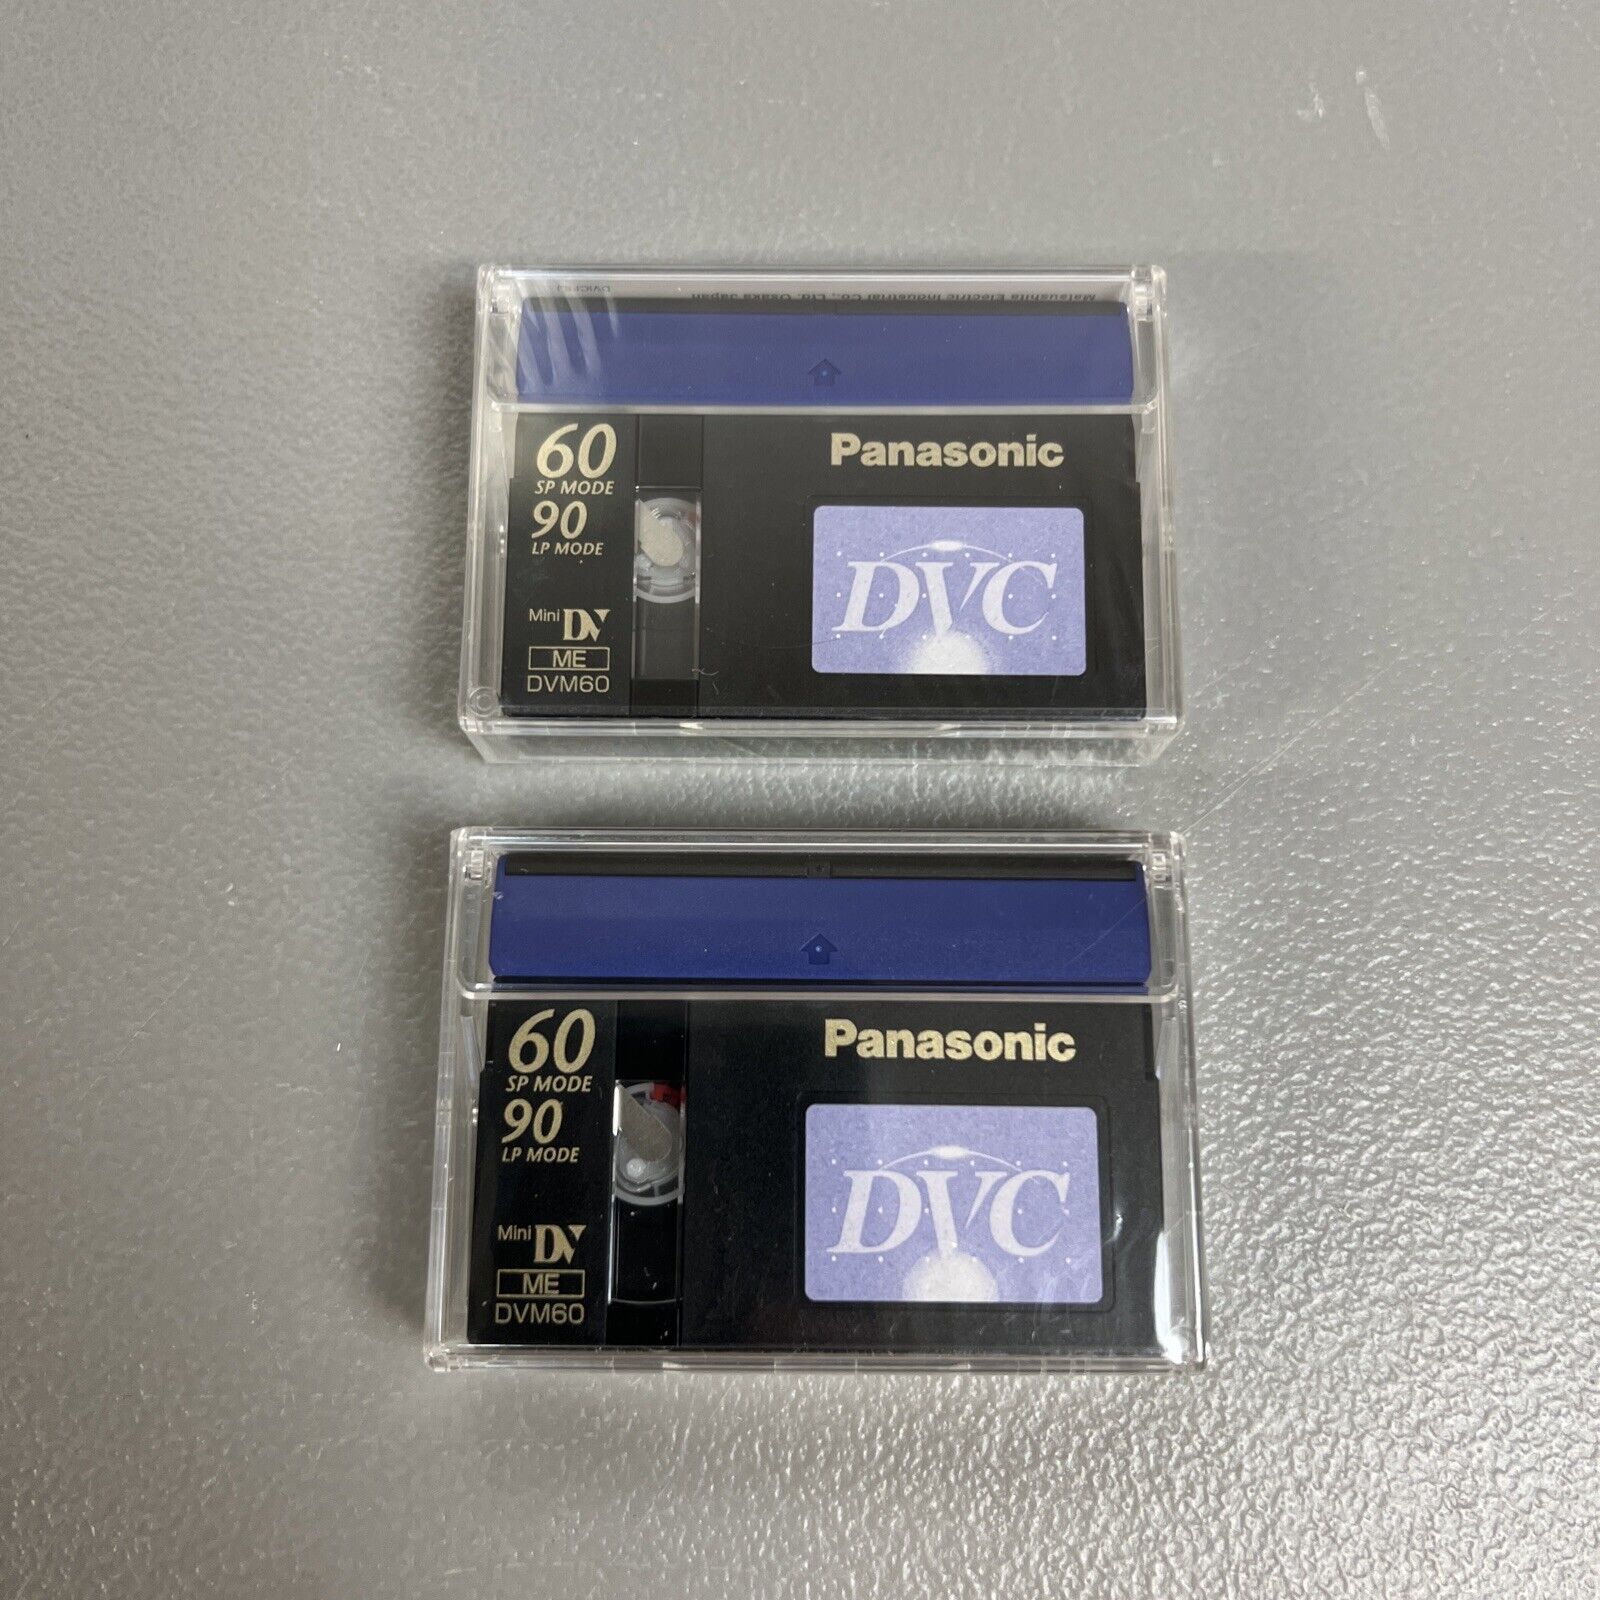 (2) Panasonic DVC Mini DV Video Cassettes 60 sp 90 lp DVM60  NOS Lot of 2 Sealed Panasonic DVM60